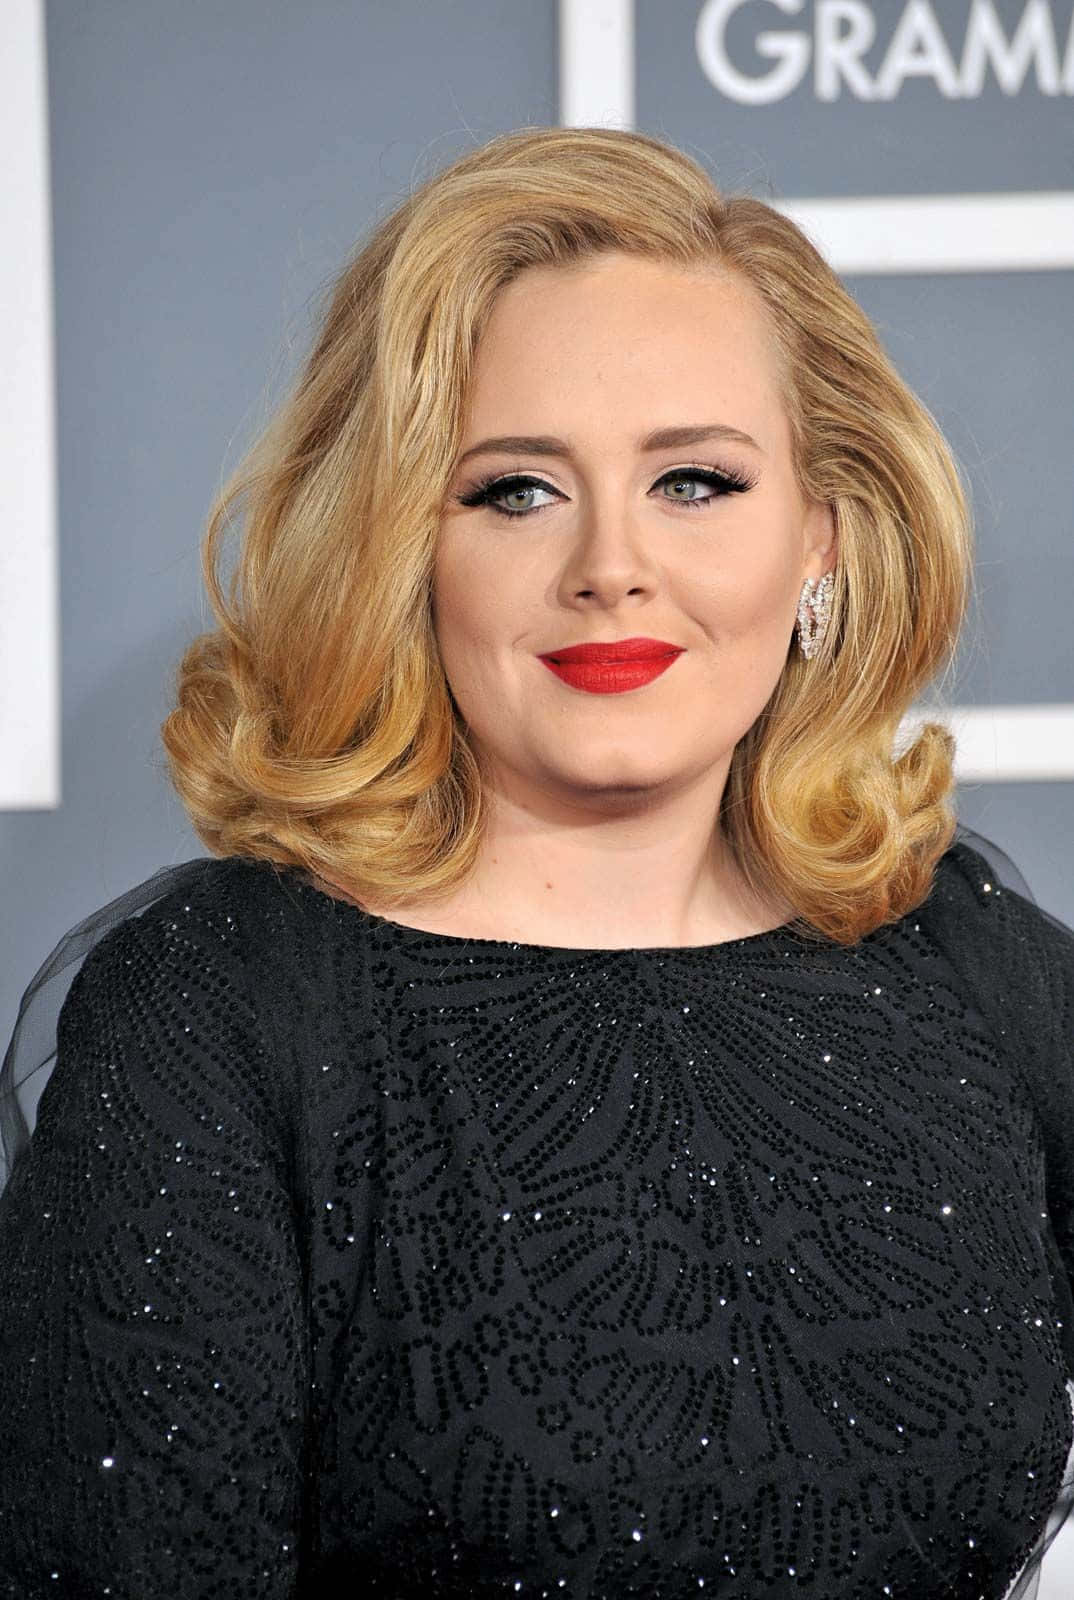 Adeleuppträder På Grammy Awards